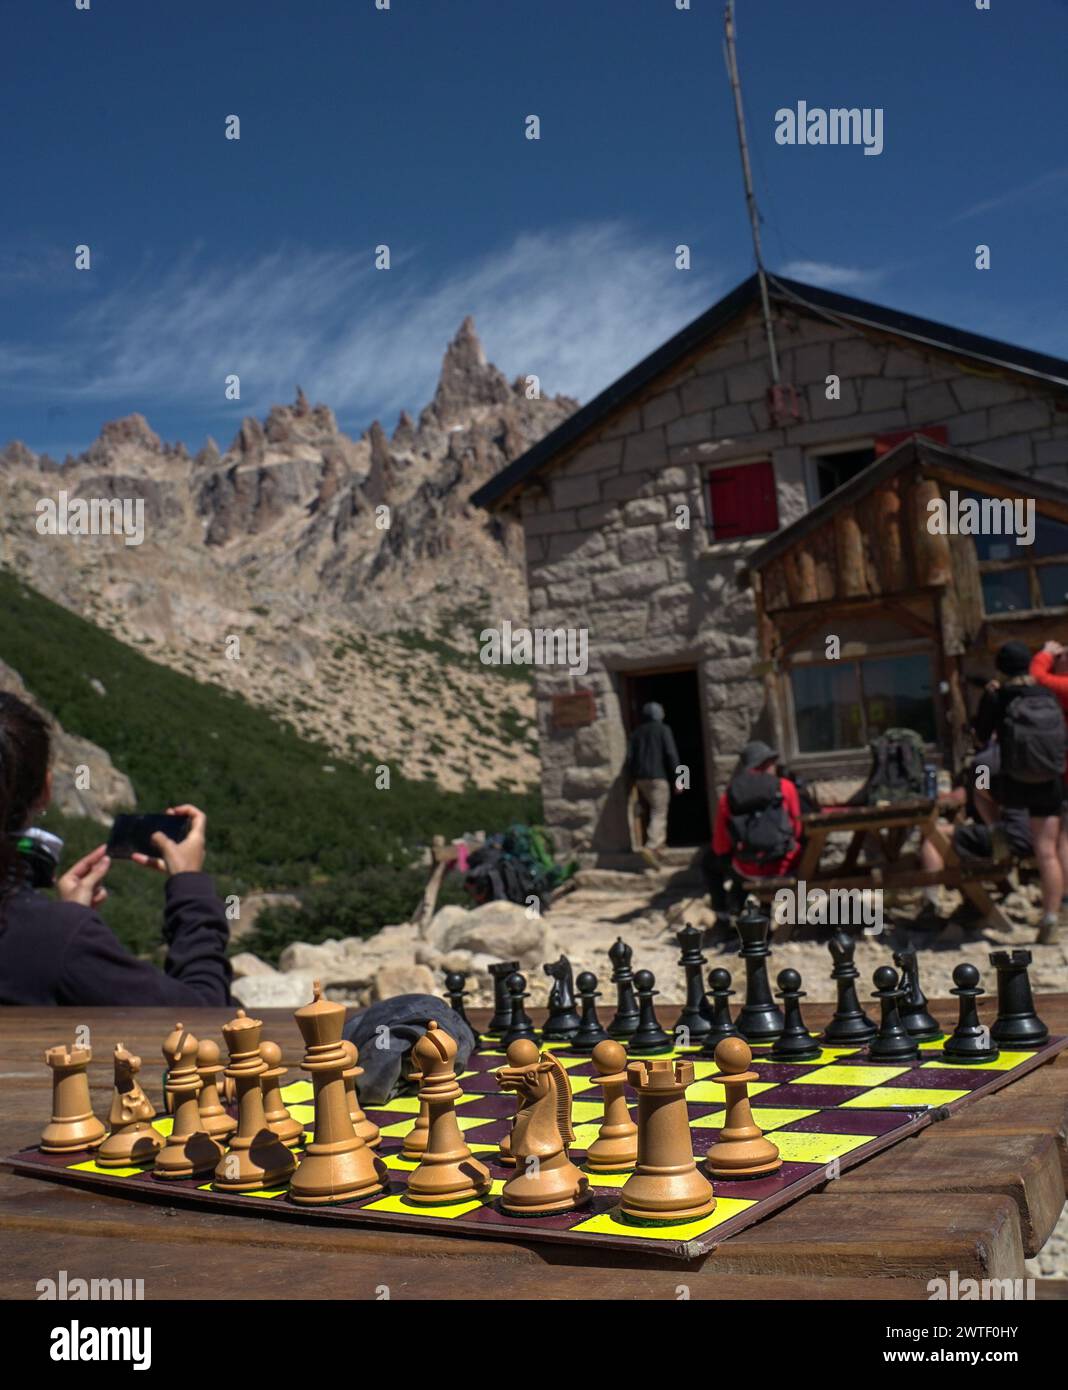 juego de ajedrez en la cabaña Stock Photo